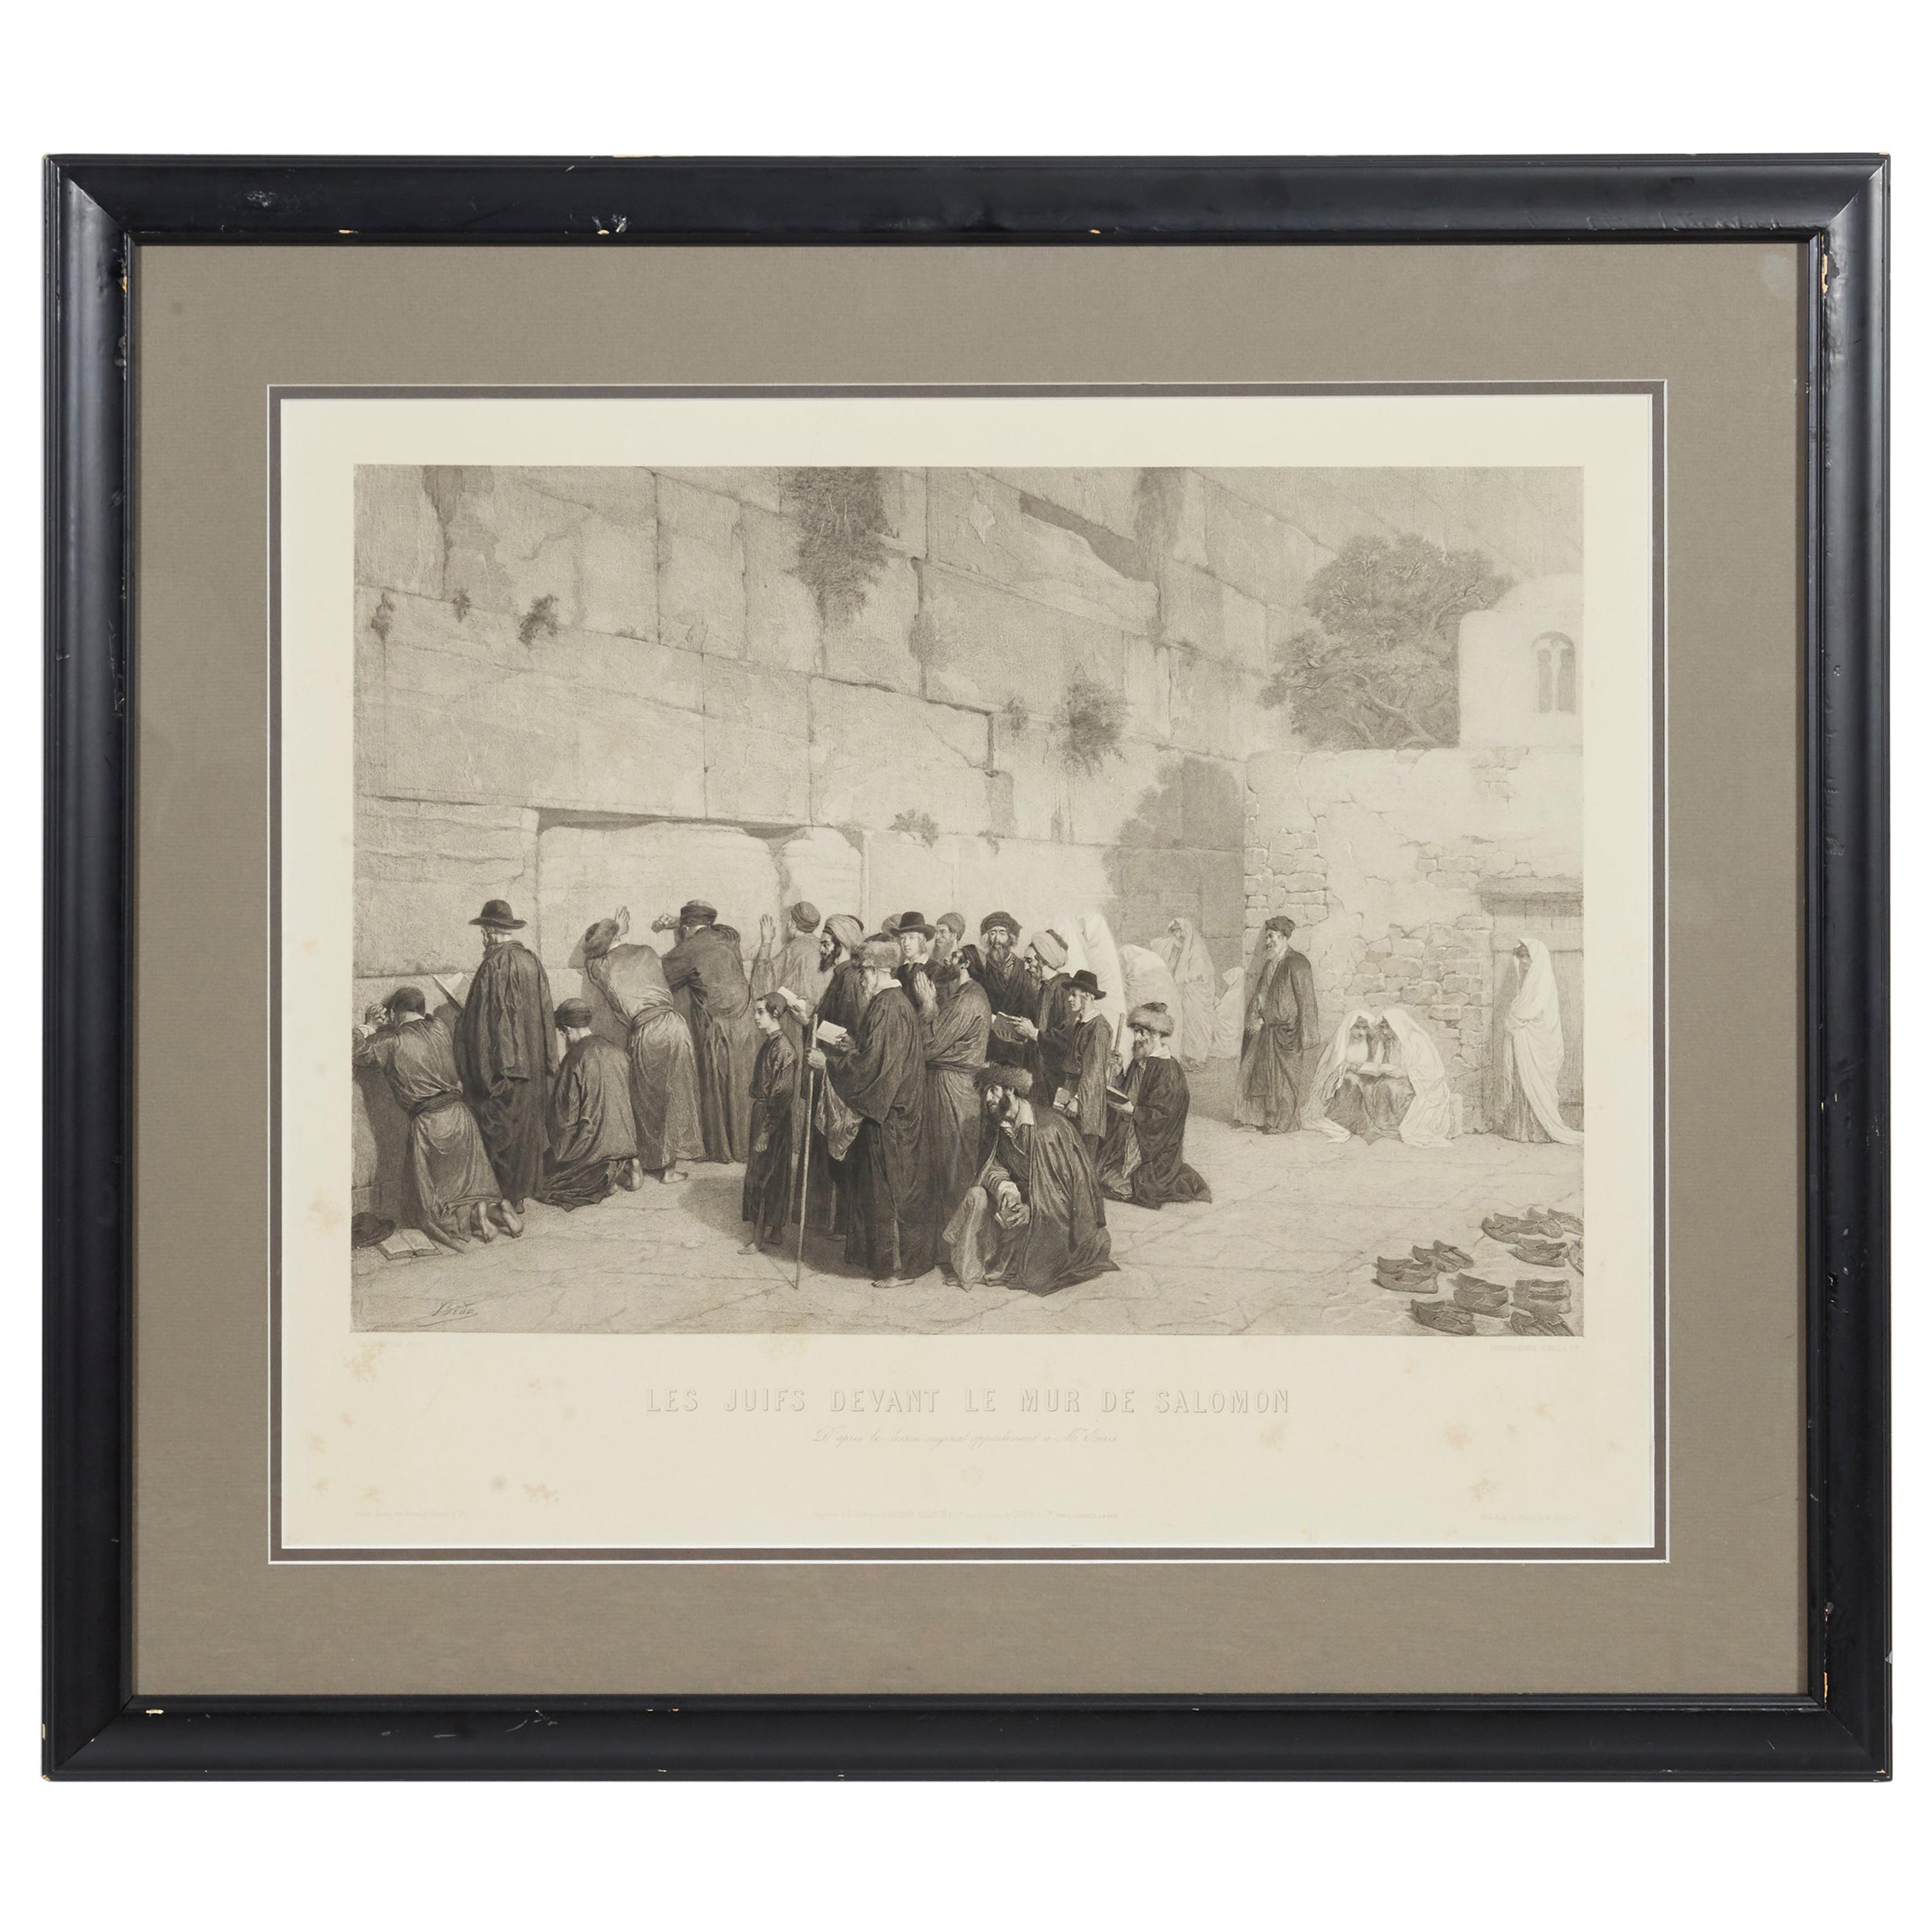 Les Juifs Devant le mur de Salomon, Jews at the Western Wall, Engraving, c. 1880